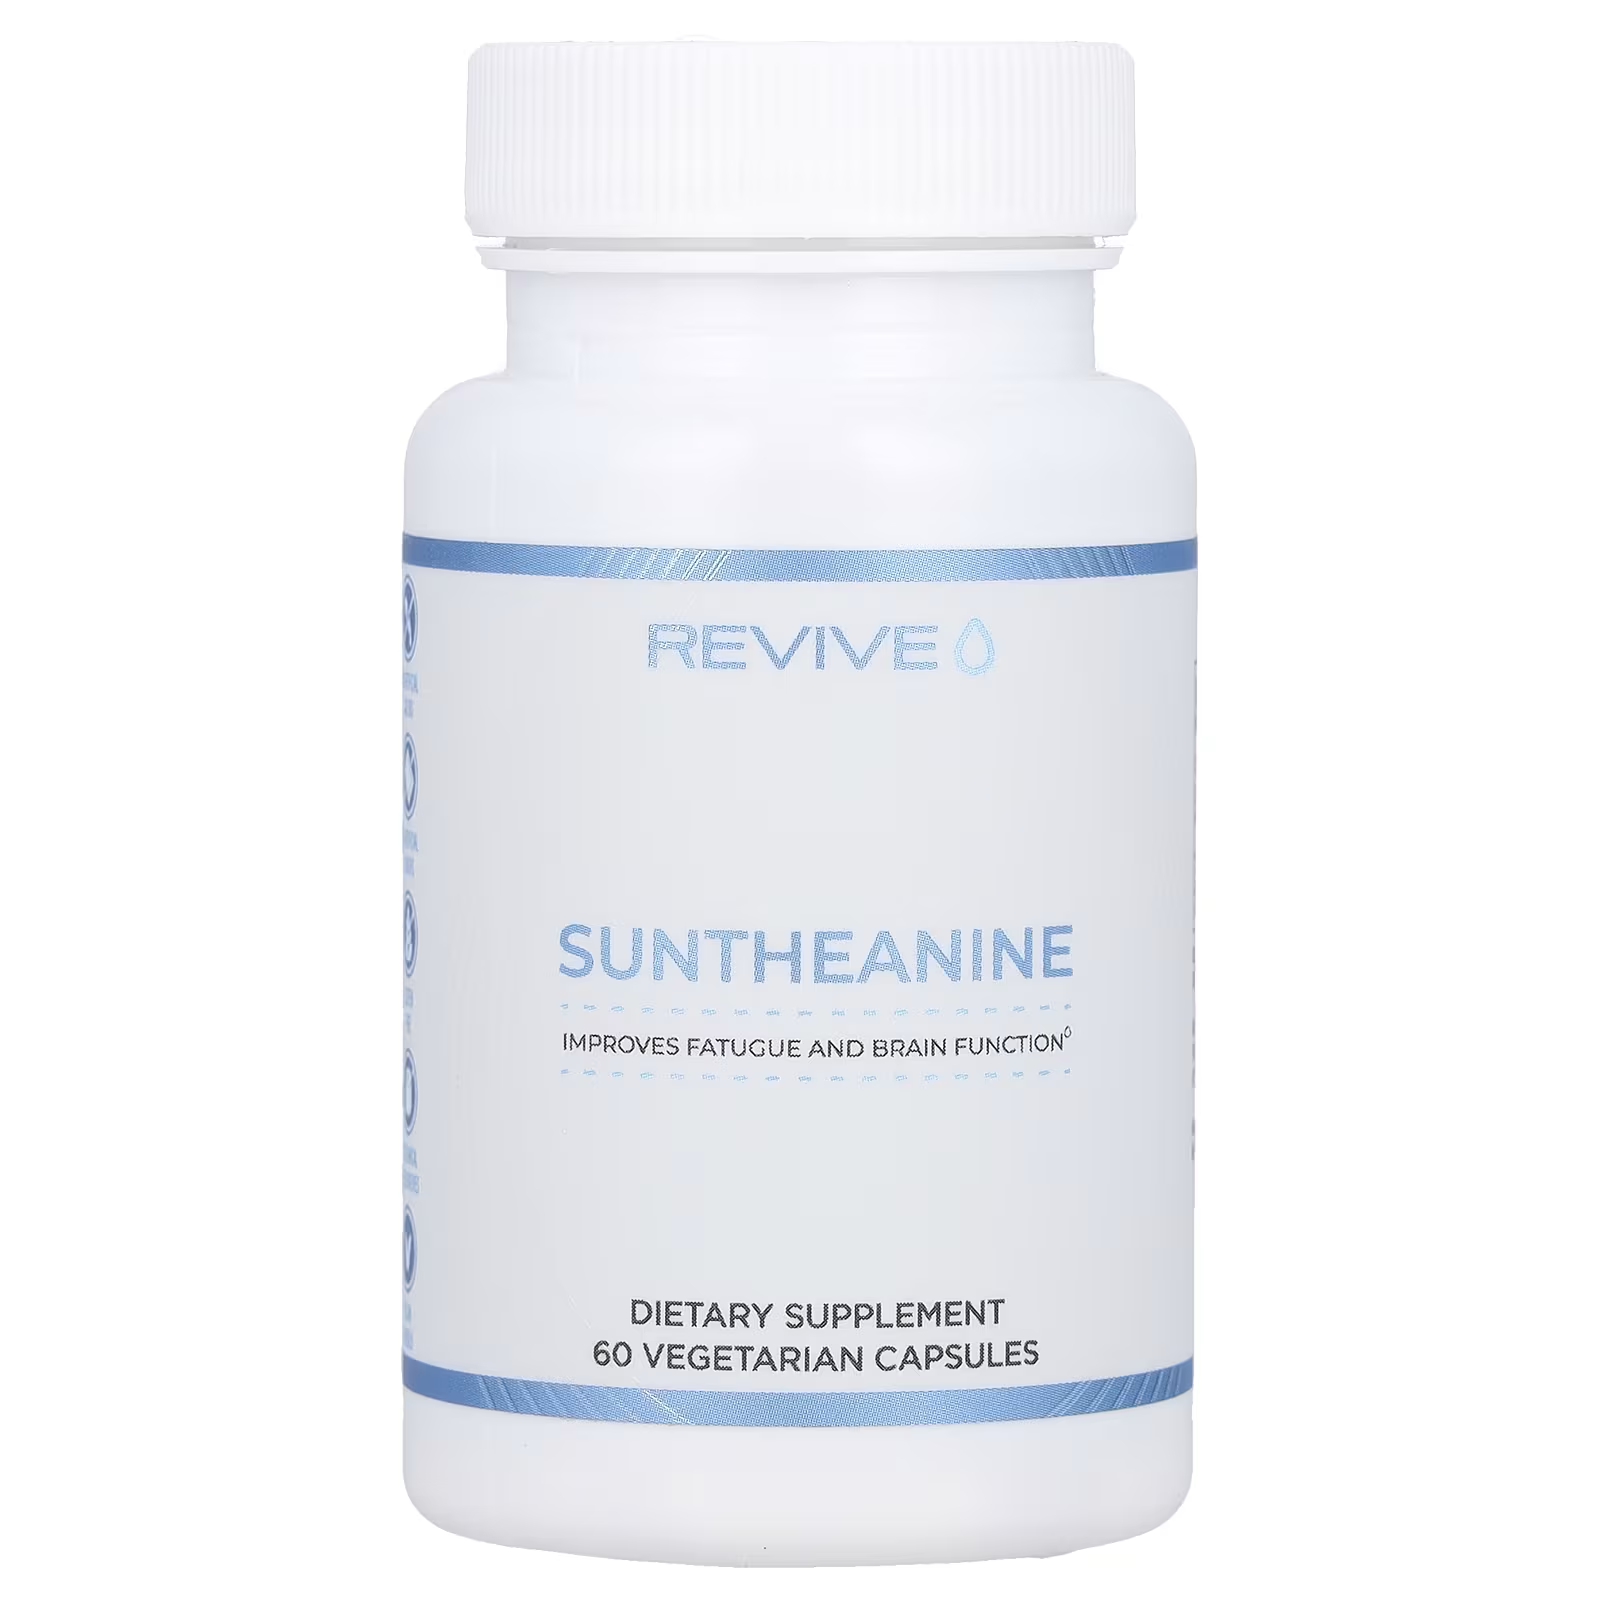 Пищевая добавка Revive Suntheanine улучшает работу мозга, 60 вегетарианских капсул adrenalcore 60 вегетарианских капсул revive